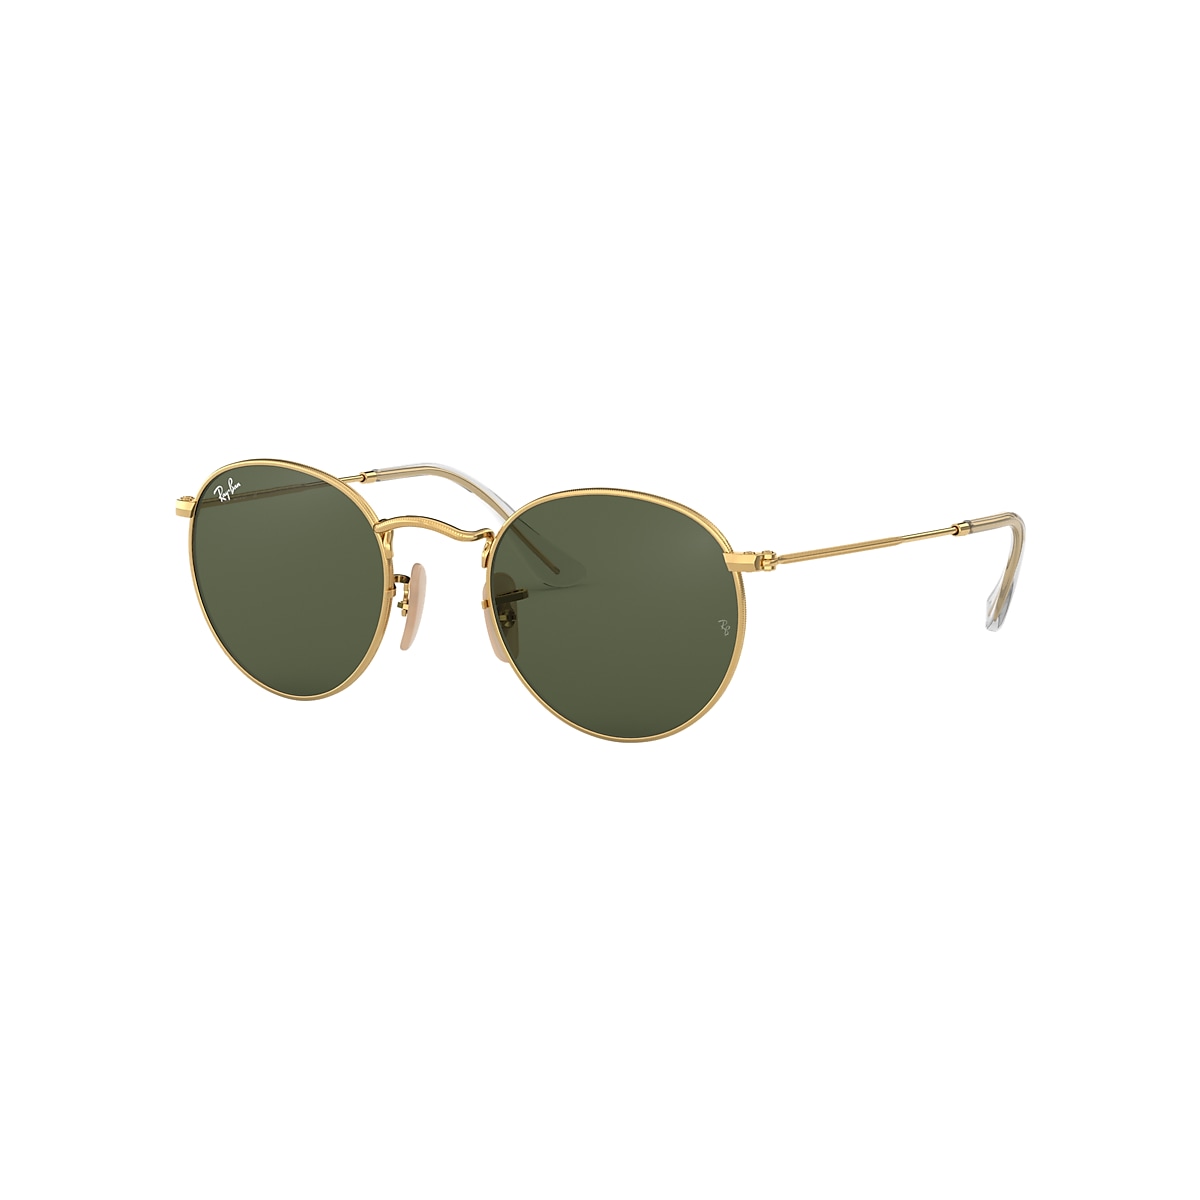 Ray-Ban Round Flat Lenses Sunglasses Gold Frame Green Lenses 53-21